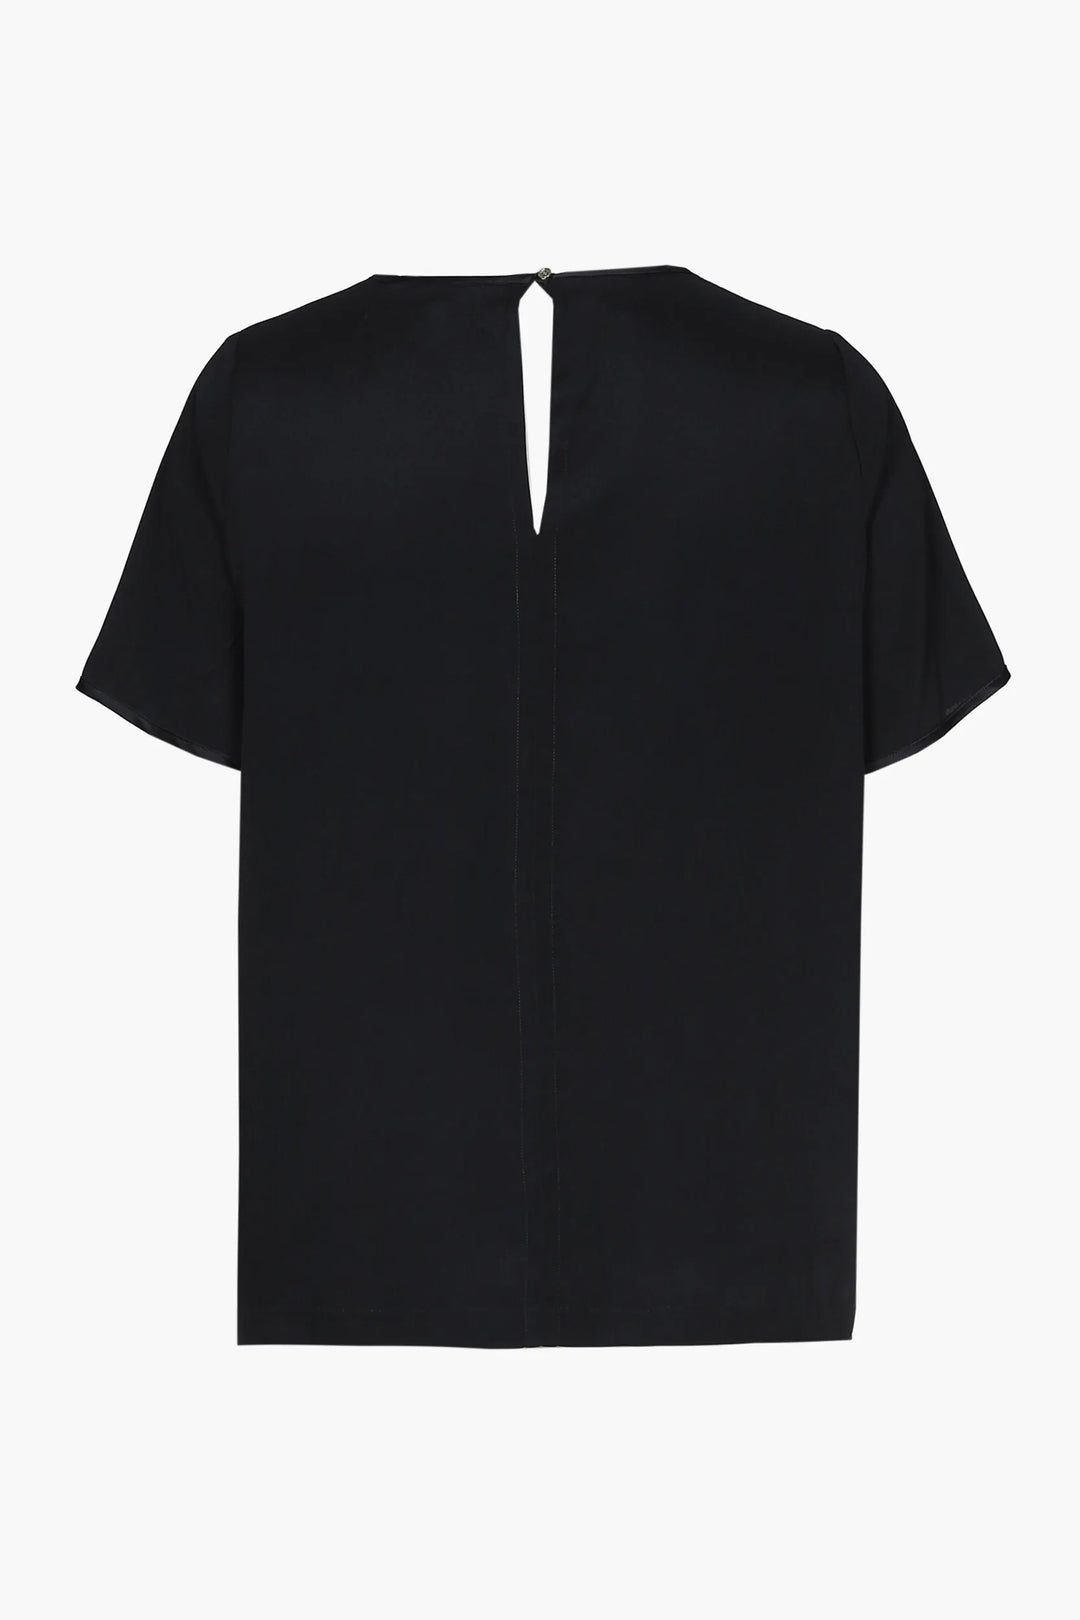 zwart zijde shirt met v-hals